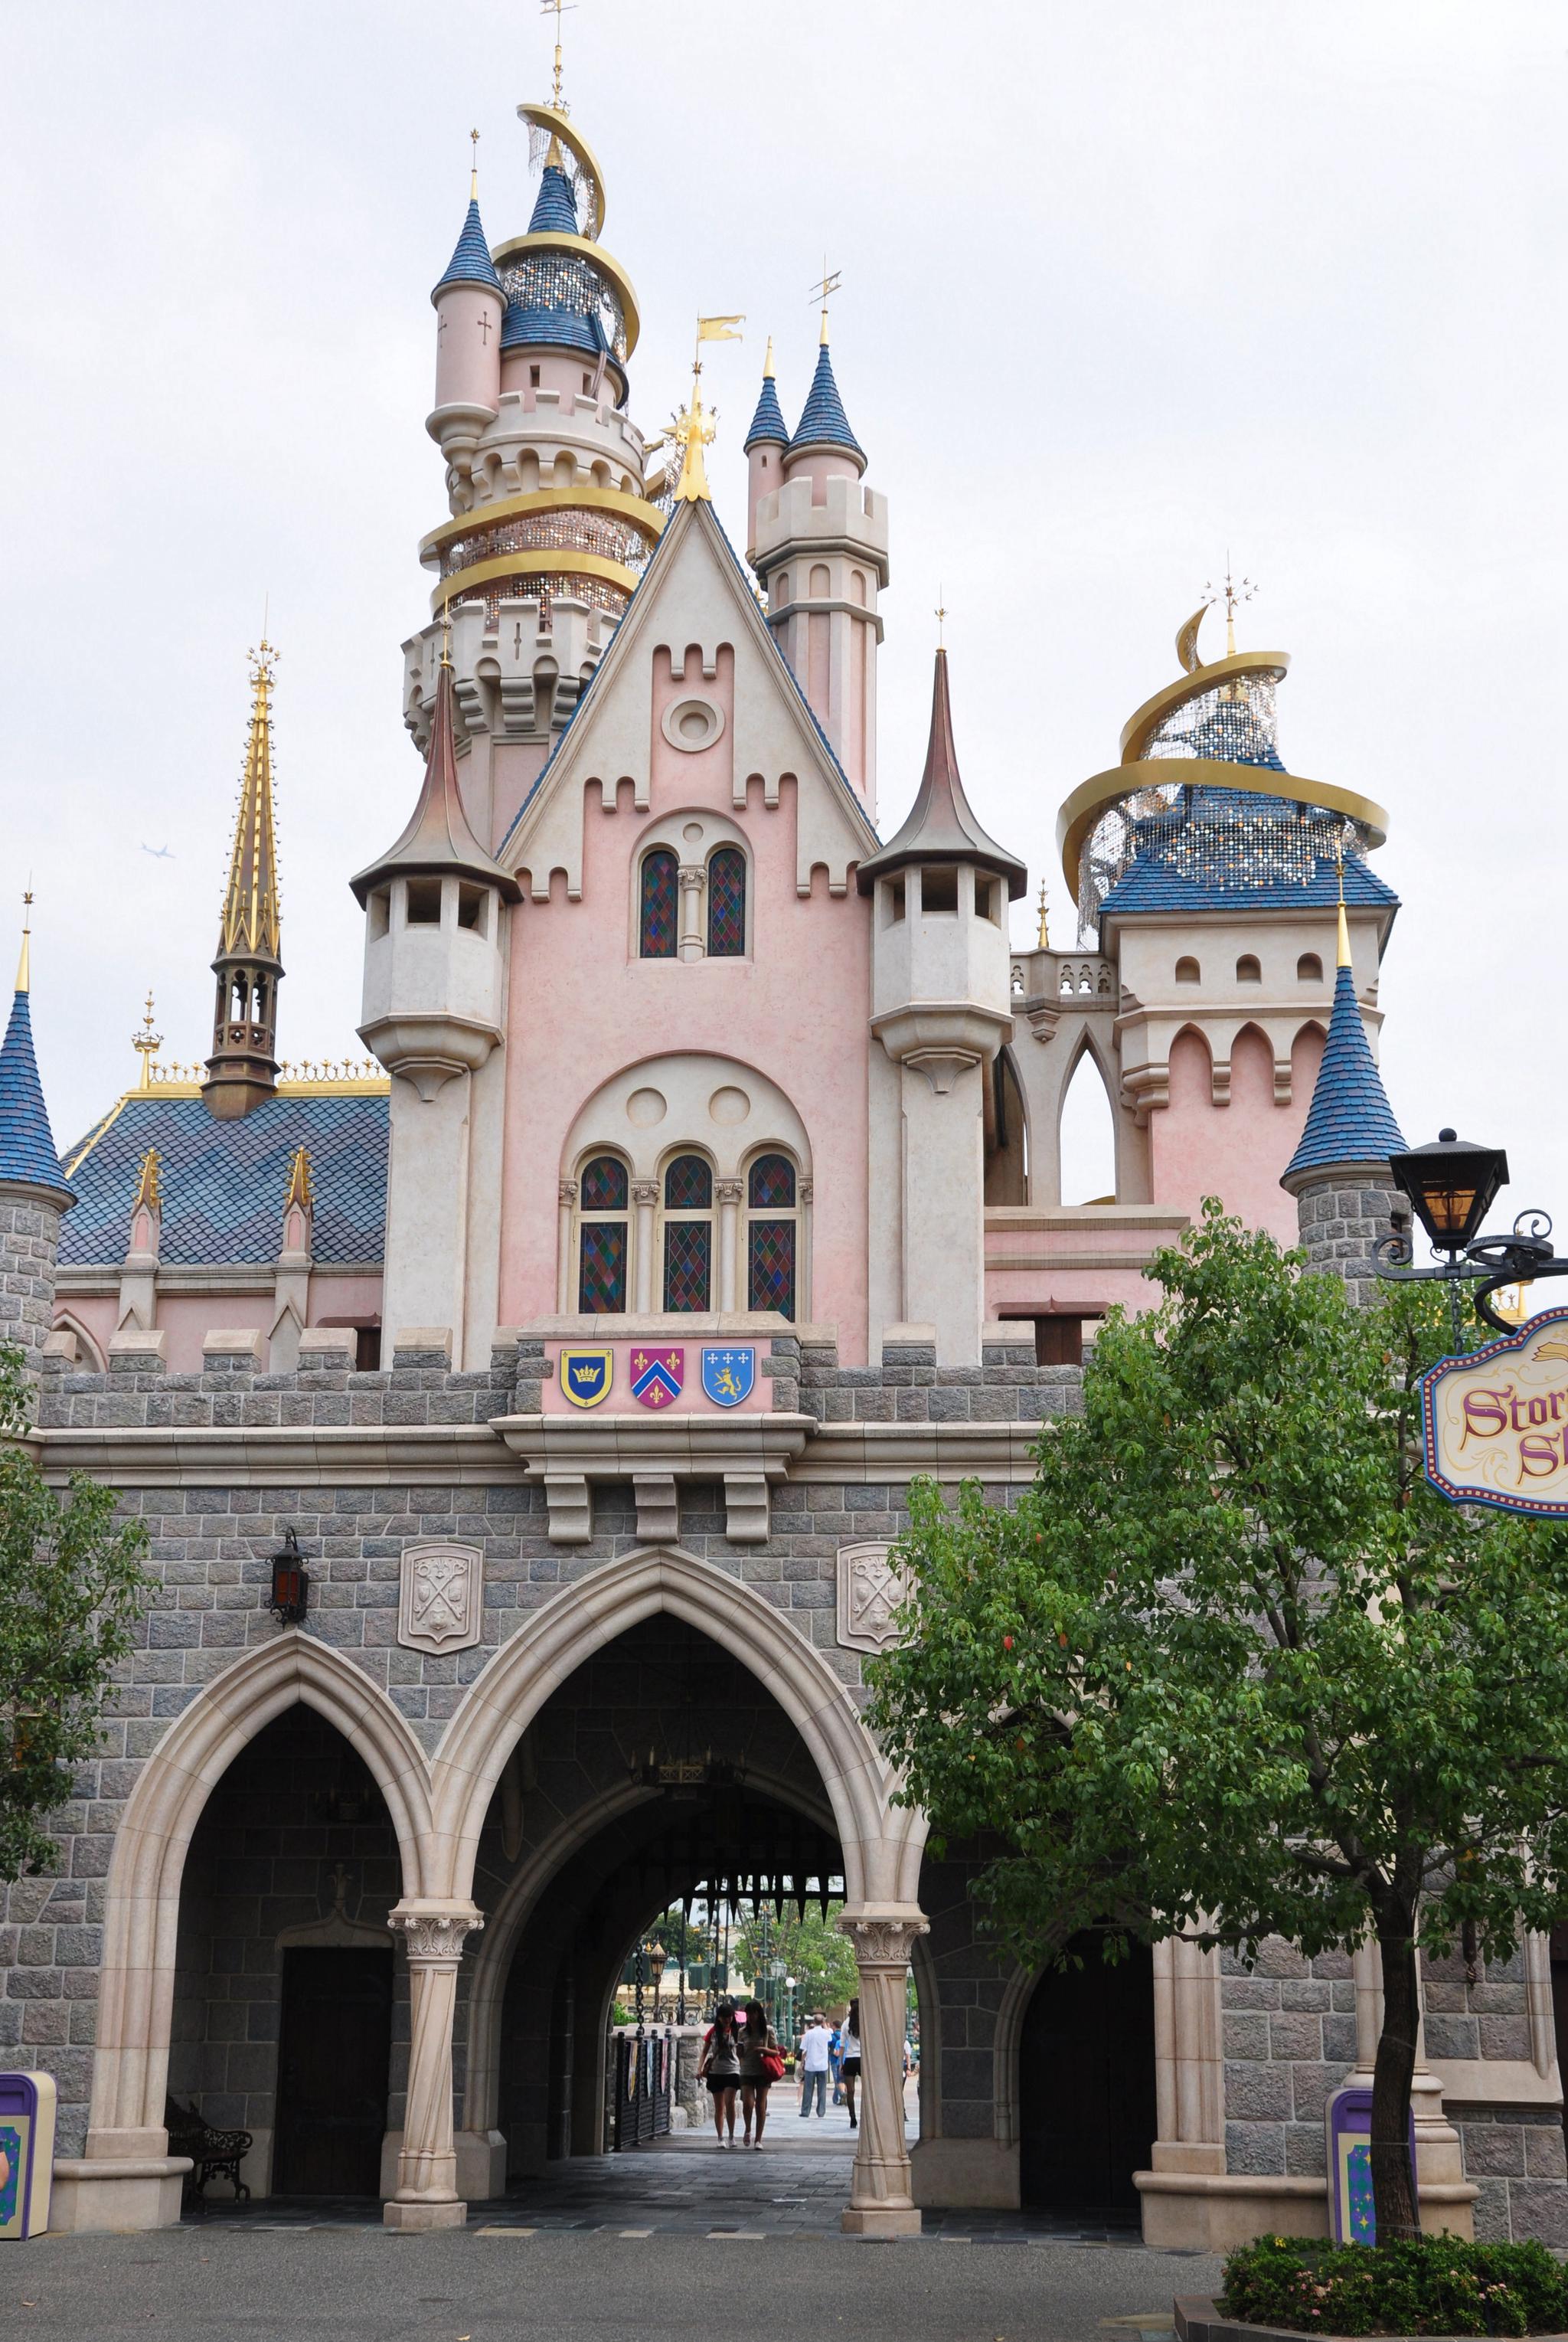 香港迪士尼睡公主城堡【原创摄影】